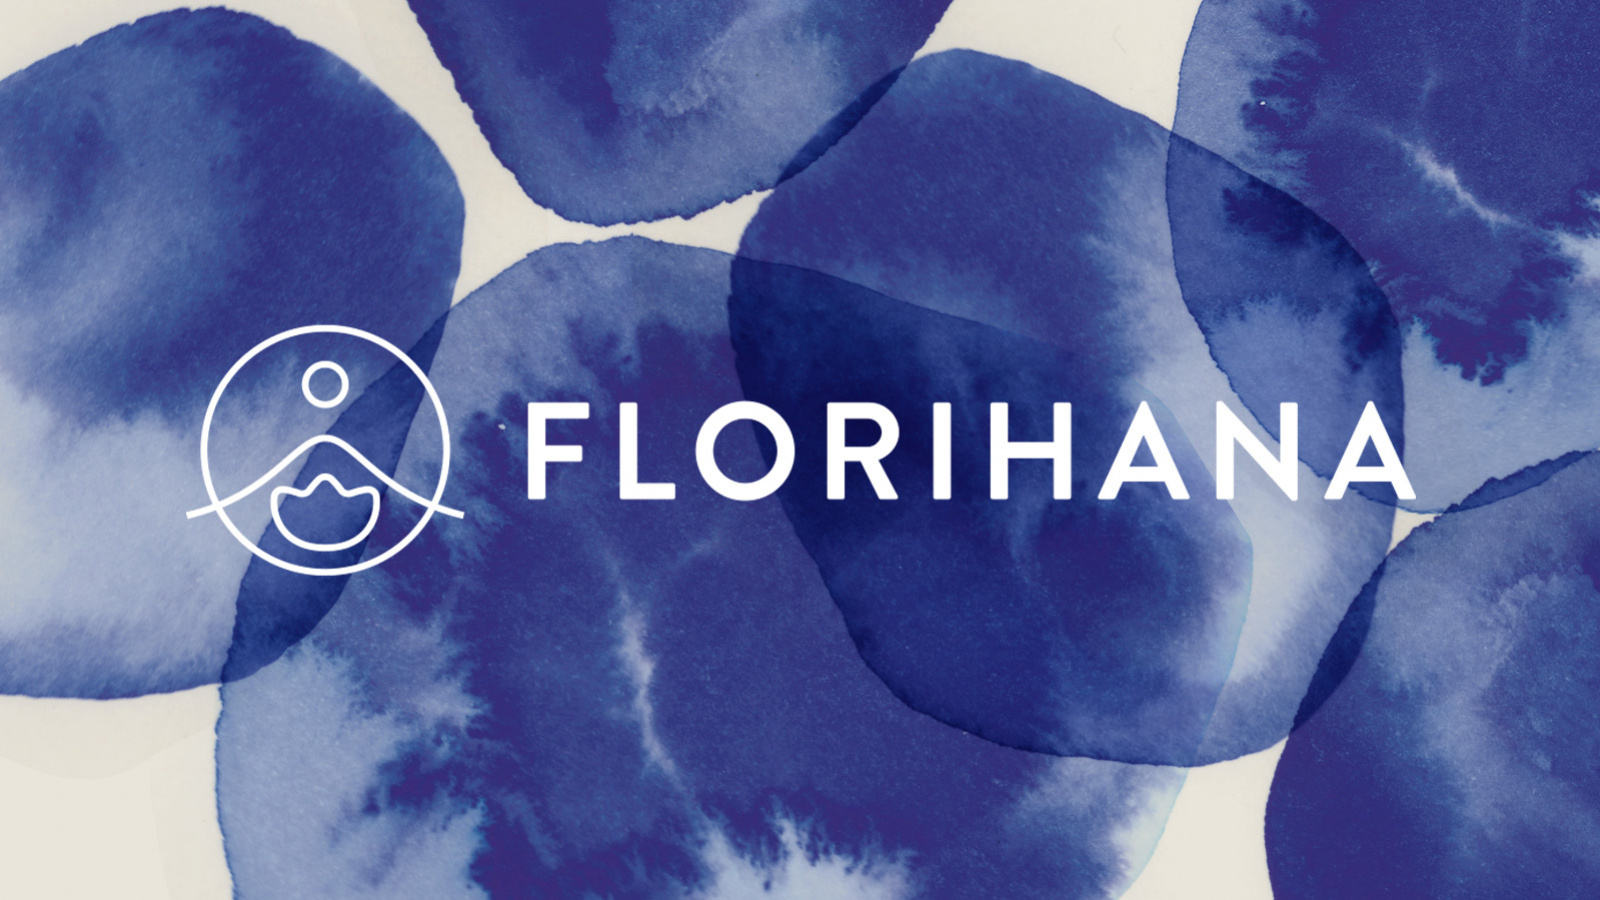 A New Brand Image for Florihana